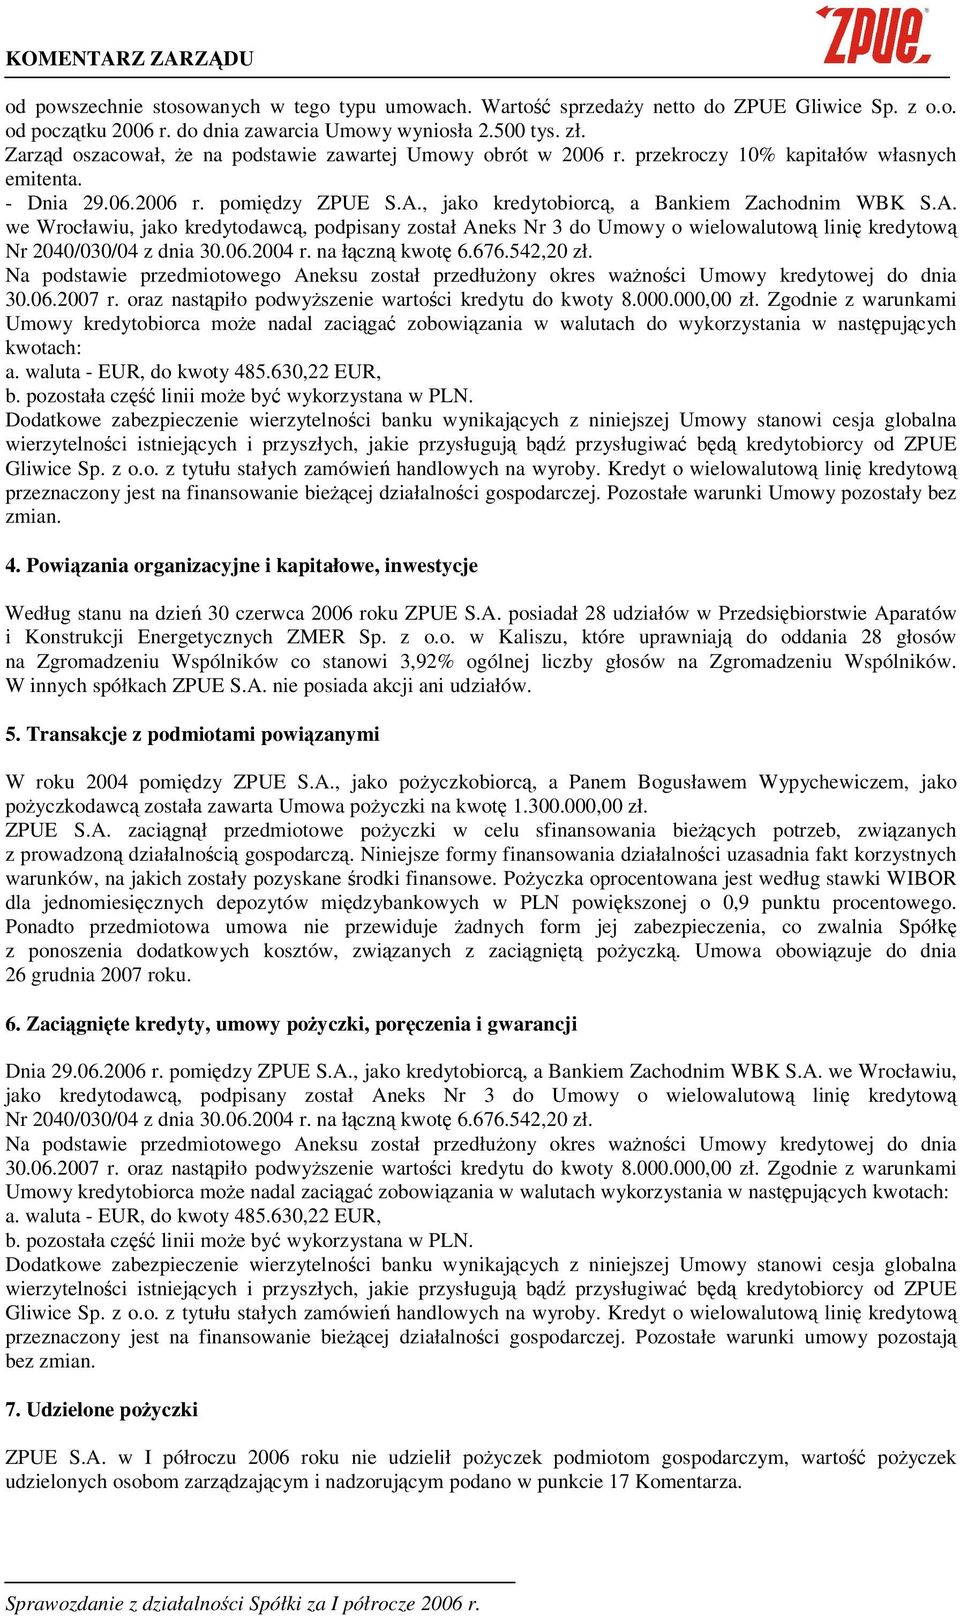 , jako kredytobiorc, a Bankiem Zachodnim WBK S.A. we Wrocławiu, jako kredytodawc, podpisany został Aneks Nr 3 do Umowy o wielowalutow lini kredytow Nr 2040/030/04 z dnia 30.06.2004 r. na łczn kwot 6.